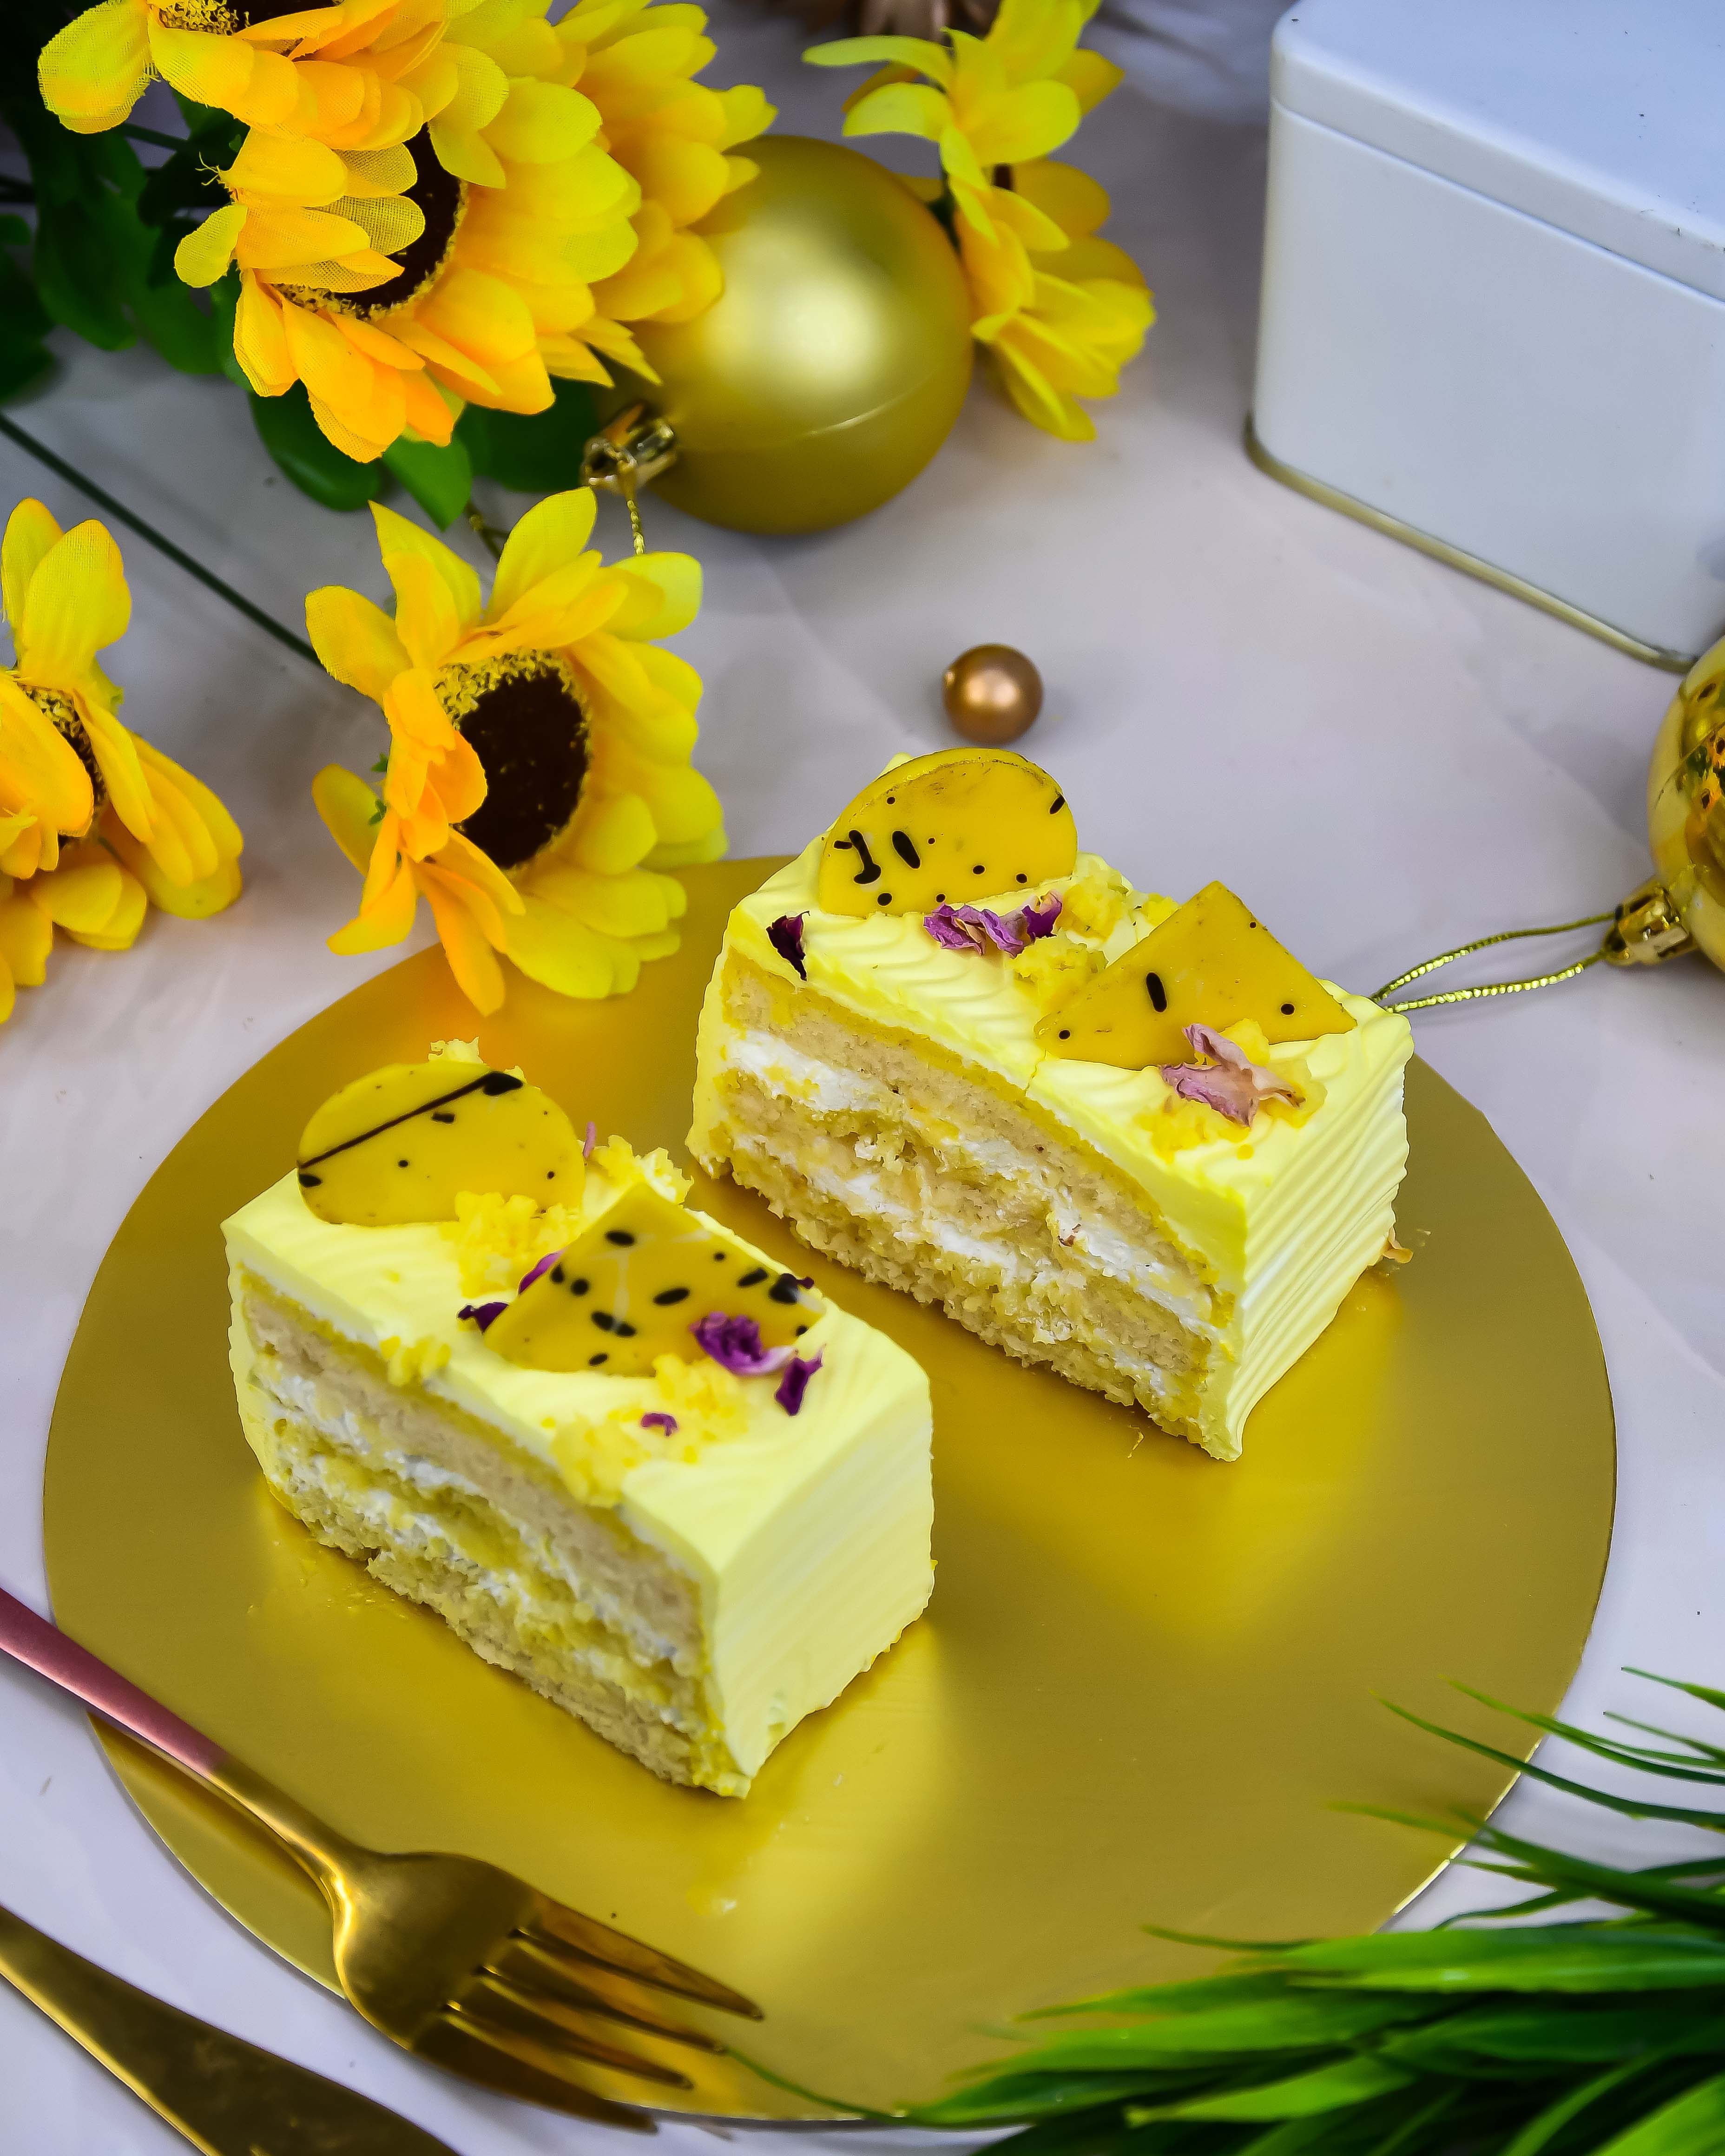 Sweet Rasmalai cake | Winni.in